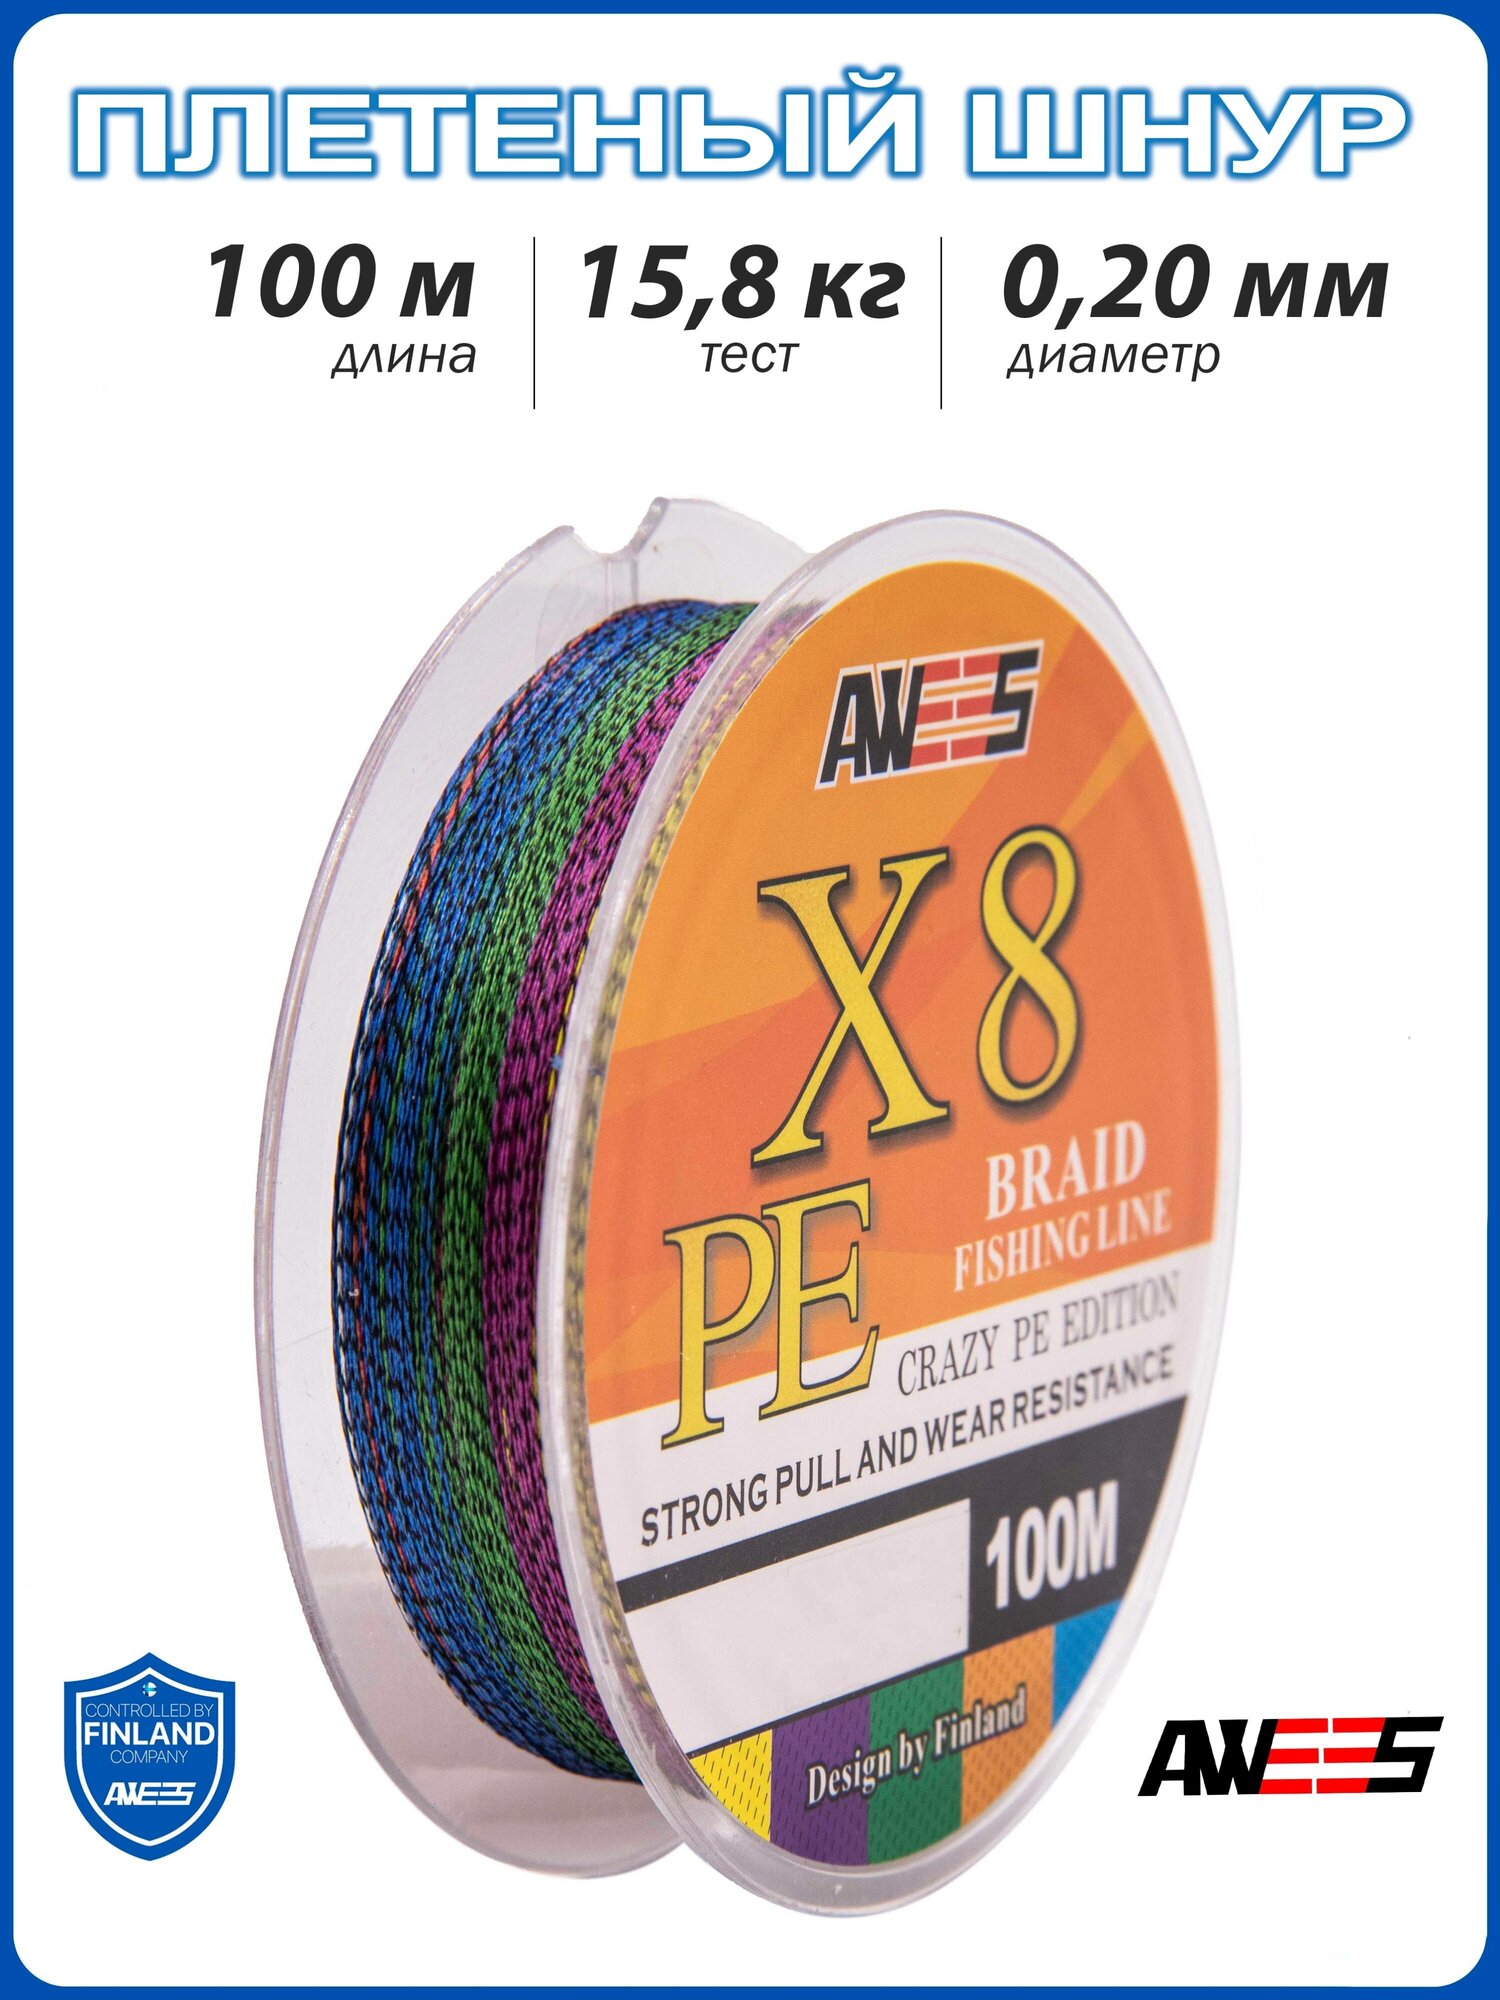 Плетеный шнур 8-жильный AWEES PE-X8 0.20, тест 15.8 кг, 100 м, колор микс/плетёнка/леска плетеная/леска/шнур для рыбалки